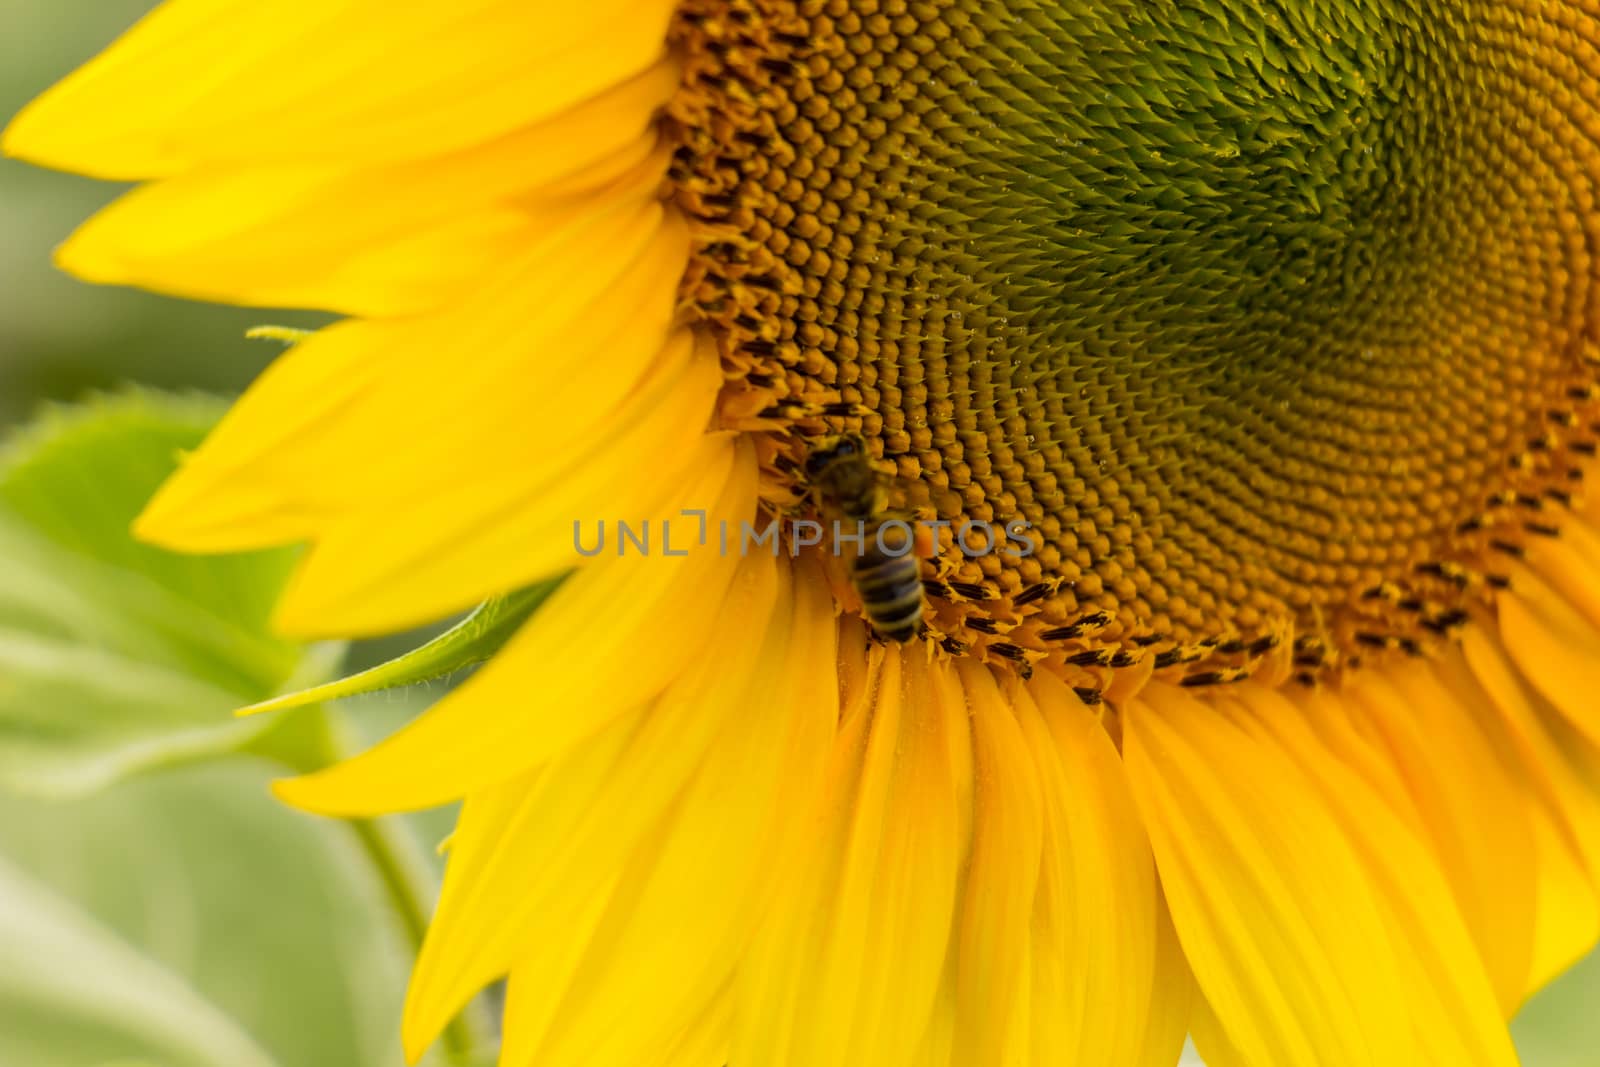 Sunflower field by ValentinBalan